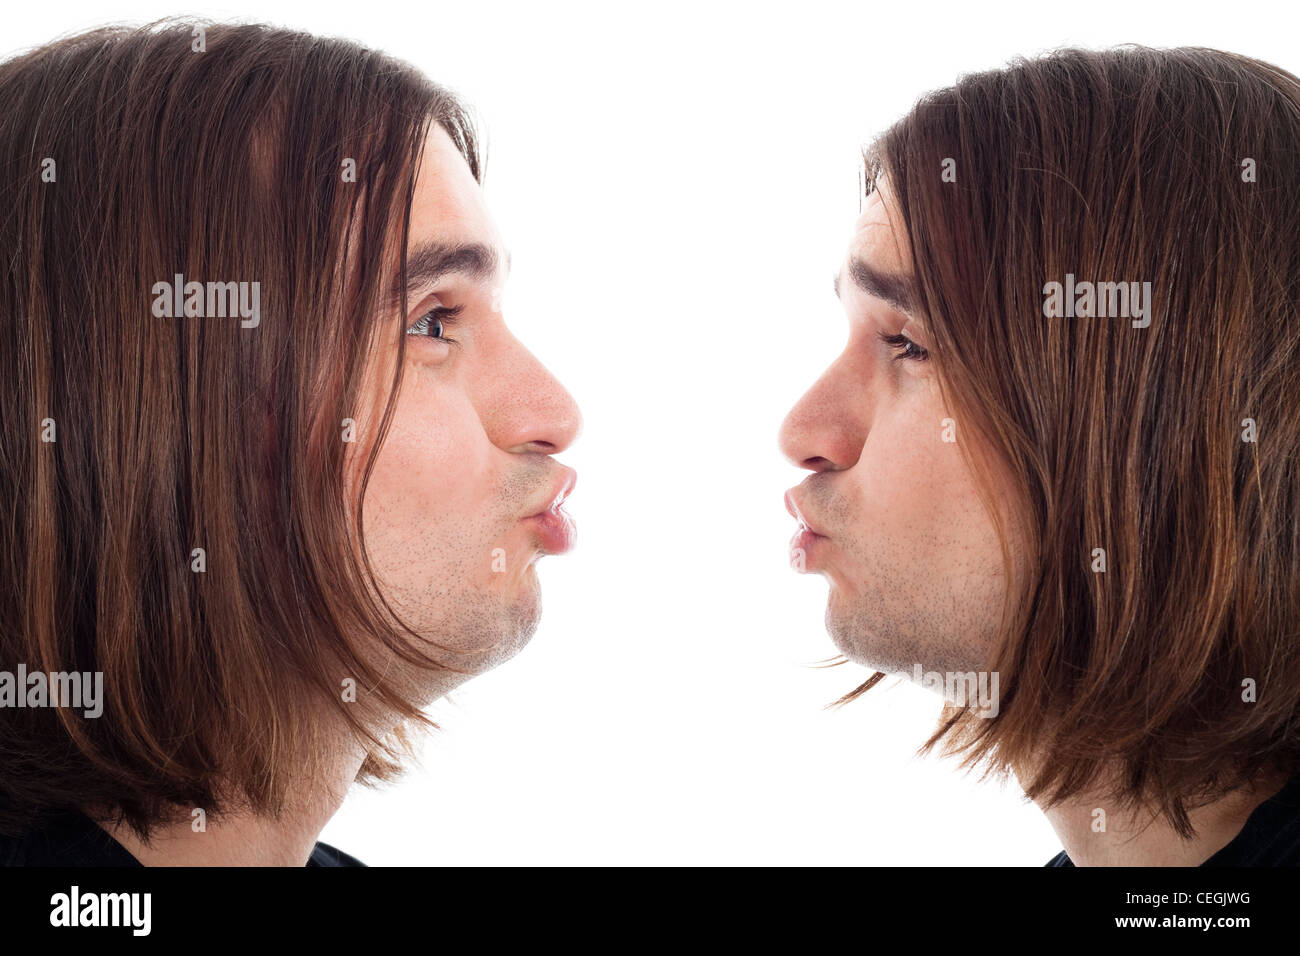 Adulte de jeune homme aux cheveux long baiser faisant face, isolé sur fond blanc. Banque D'Images